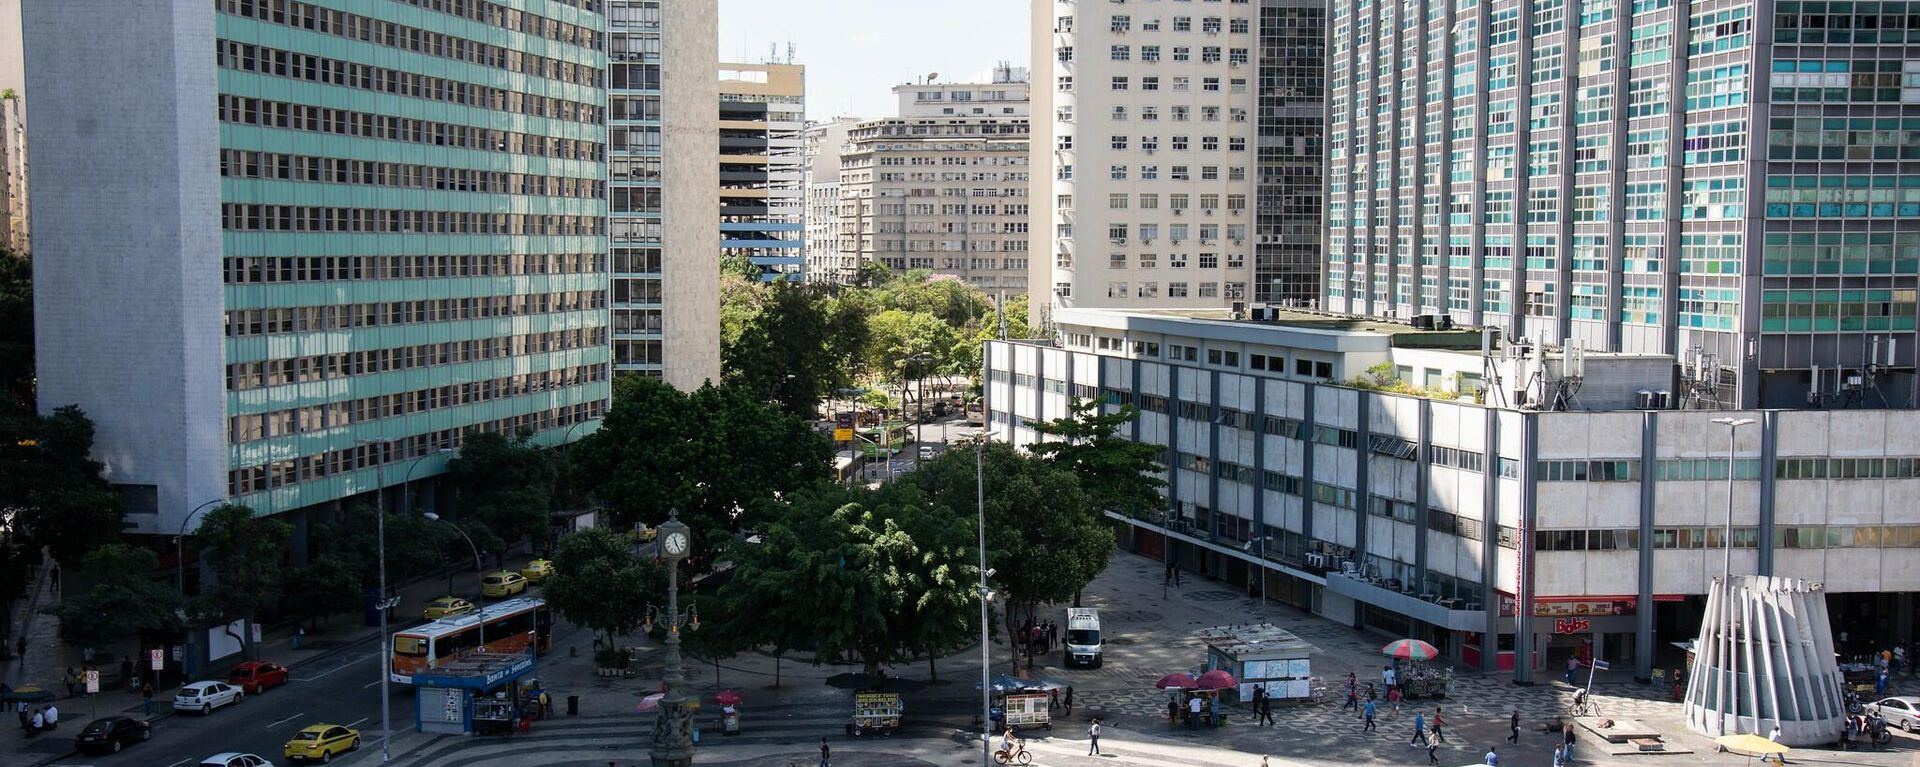 Edificios de oficinas en el centro de Río - Sputnik Mundo, 1920, 16.08.2021